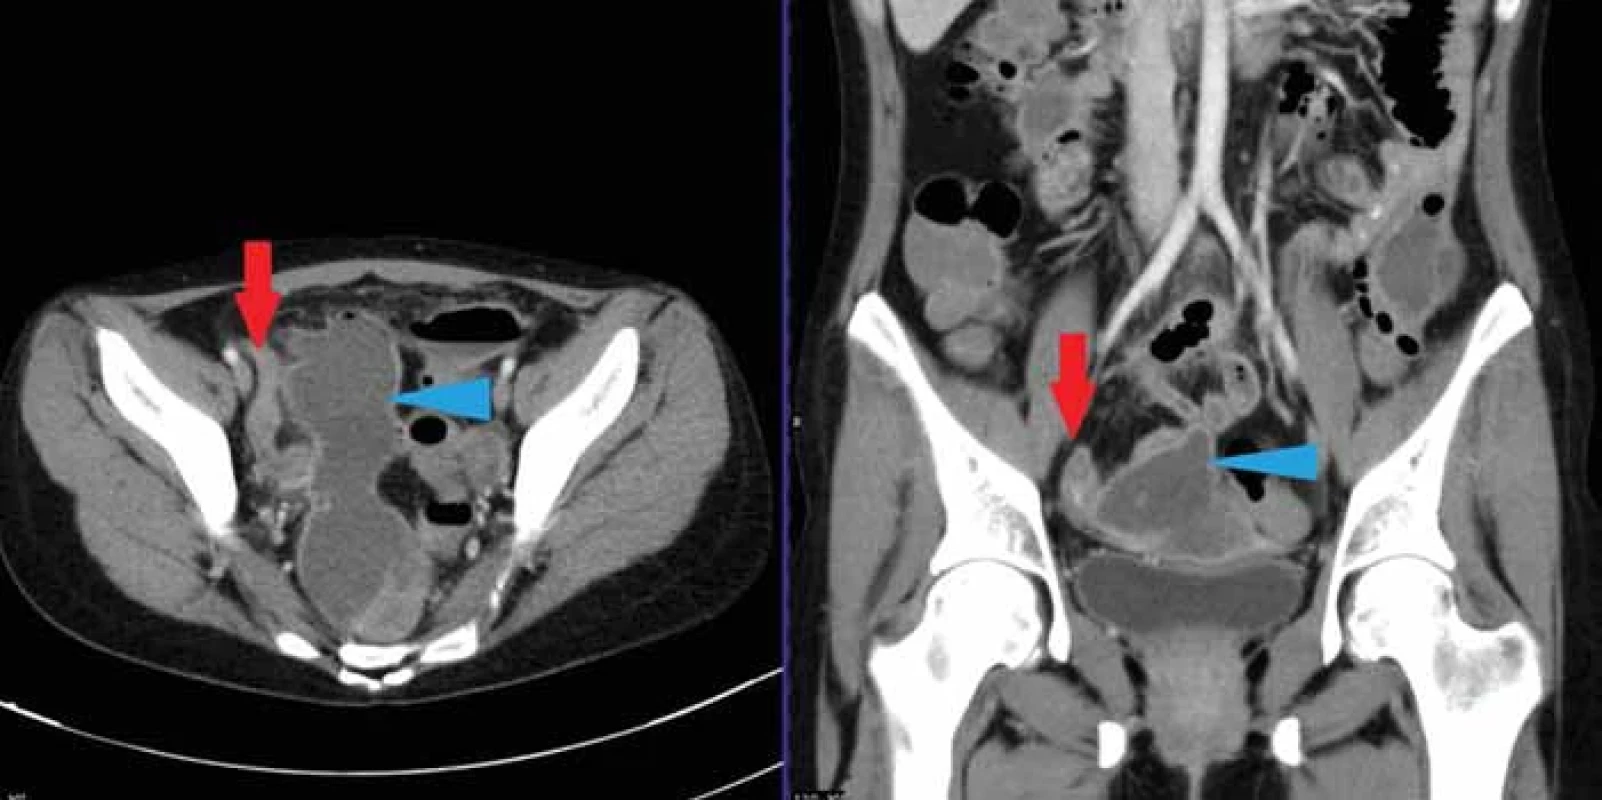 32letá pacientka se známou Crohnovou nemocí, přichází s bolestí v podbříšku. Na CT je patrna objemná KT v pánvi (modrá šipka), která byla obklopena tenkými kličkami, na nichž byly přítomny skip léze typické pro idiopatický střevní zánět (červená šipka).